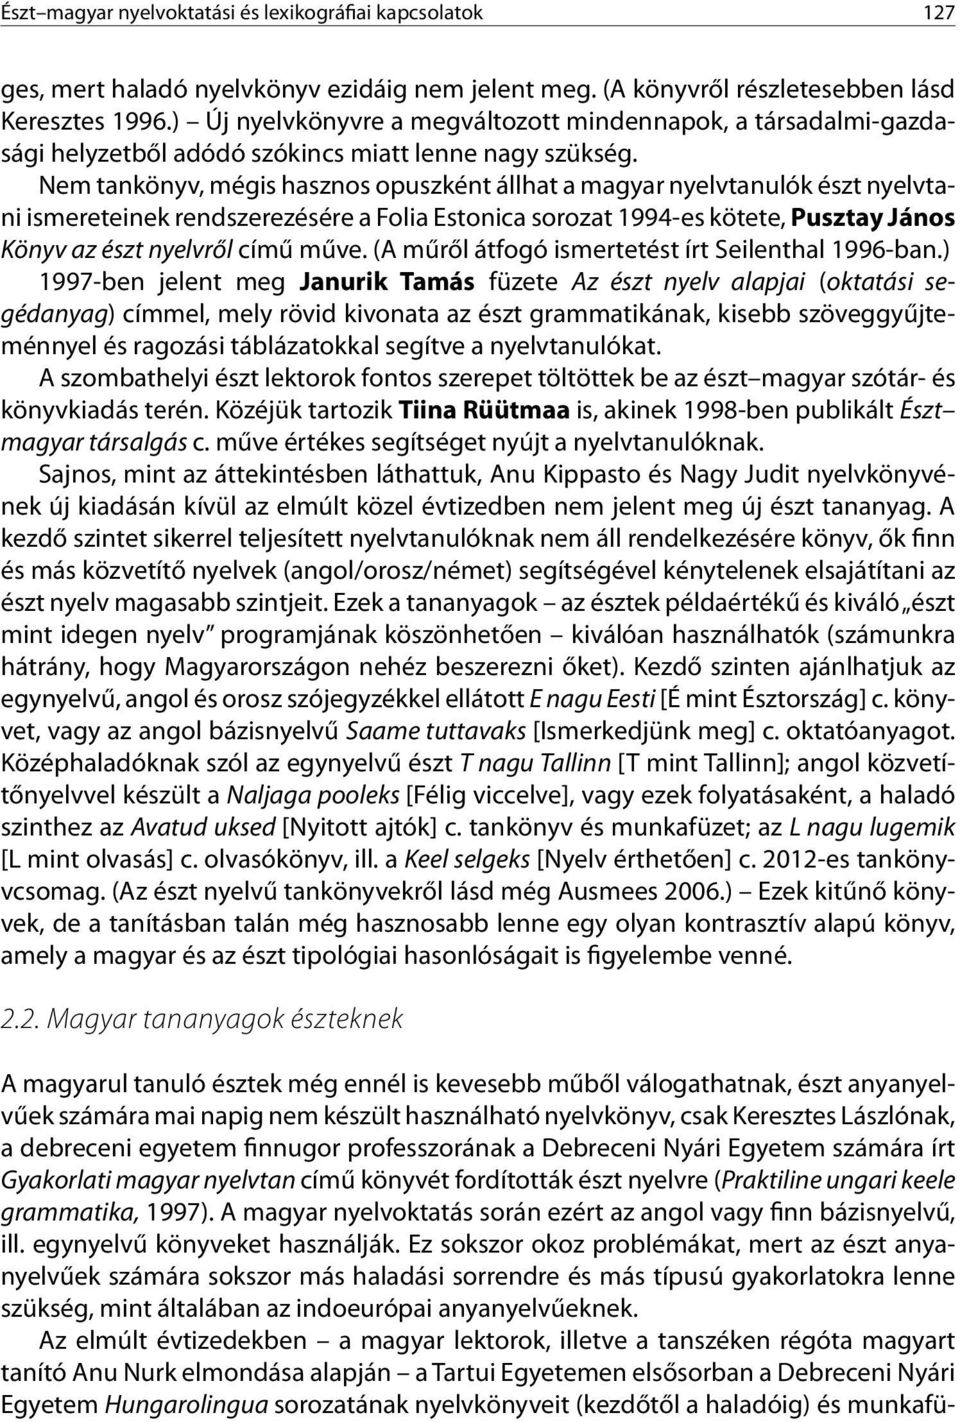 Nem tankönyv, mégis hasznos opuszként állhat a magyar nyelvtanulók észt nyelvtani ismereteinek rendszerezésére a Folia Estonica sorozat 1994-es kötete, Pusztay János Könyv az észt nyelvről című műve.